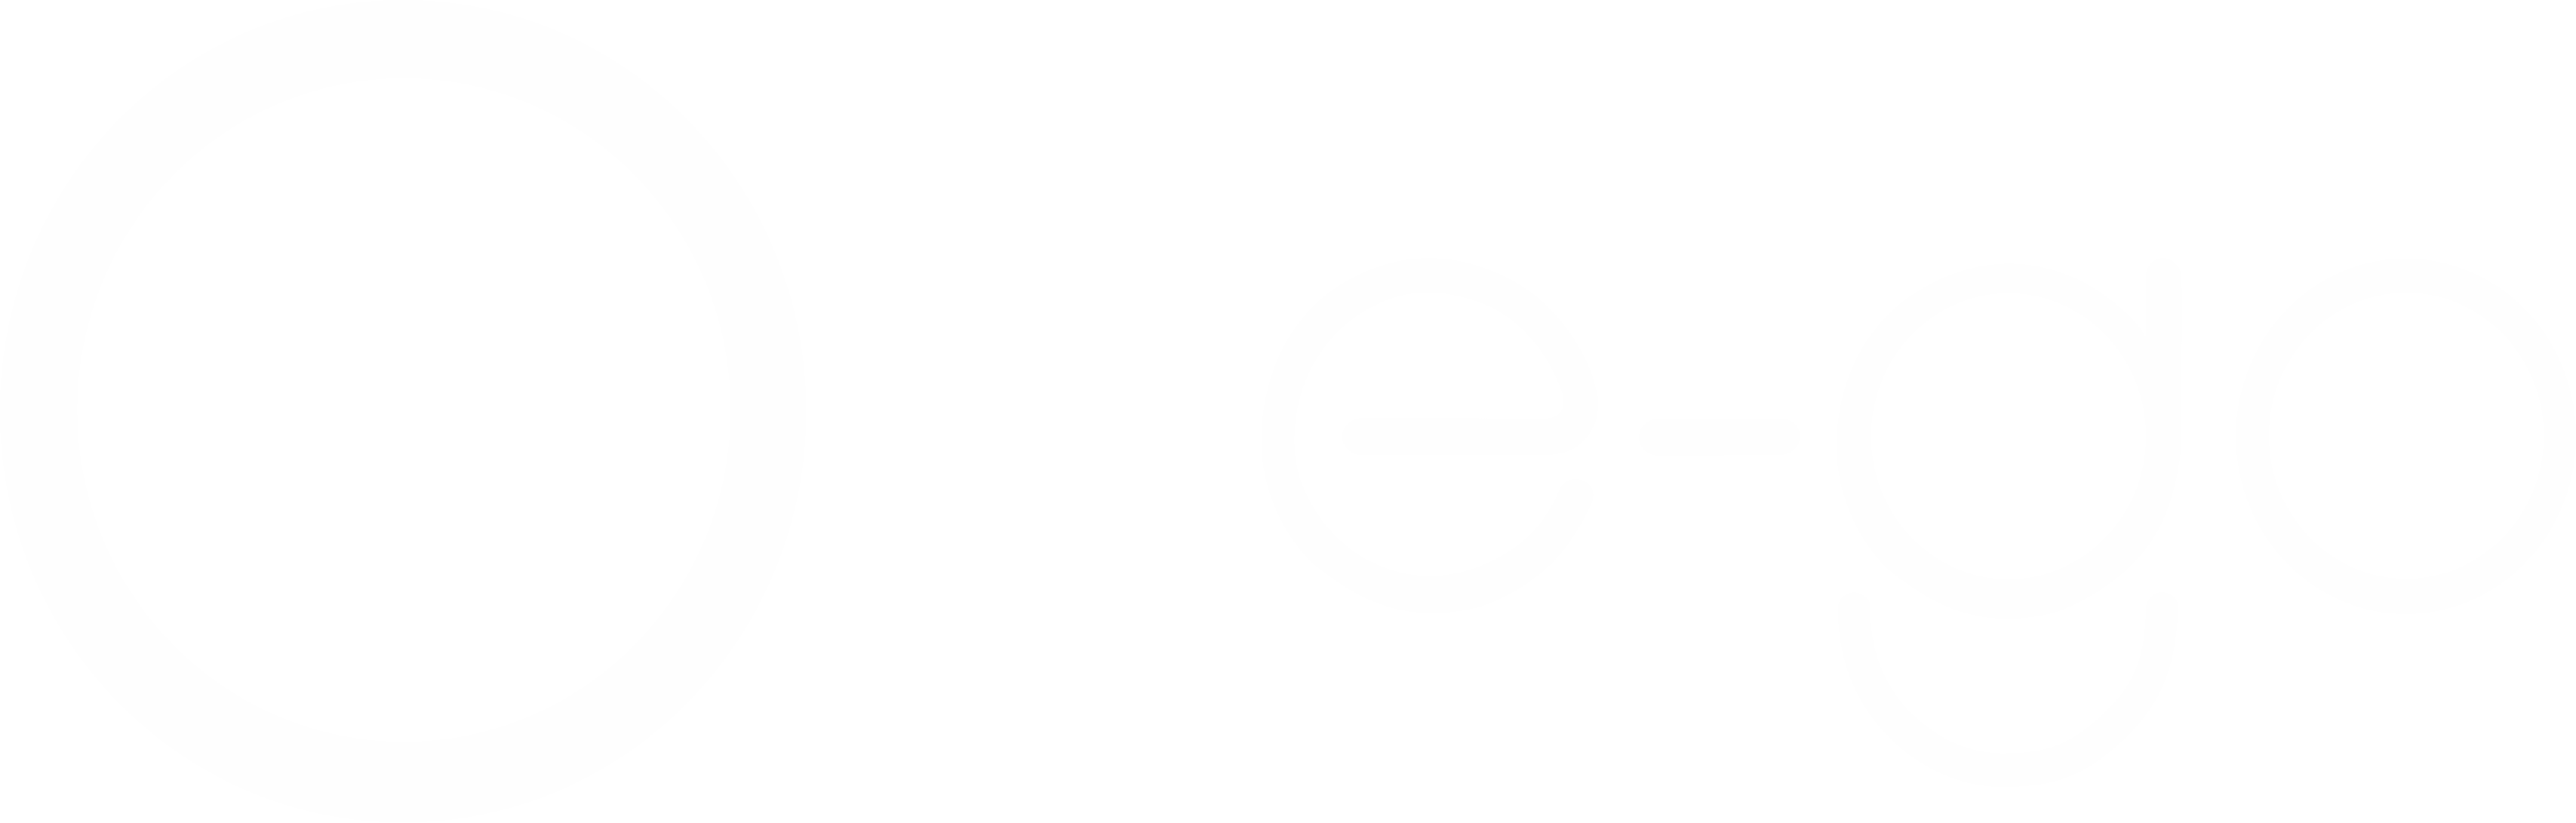 ego logo institucional HEADER (1)